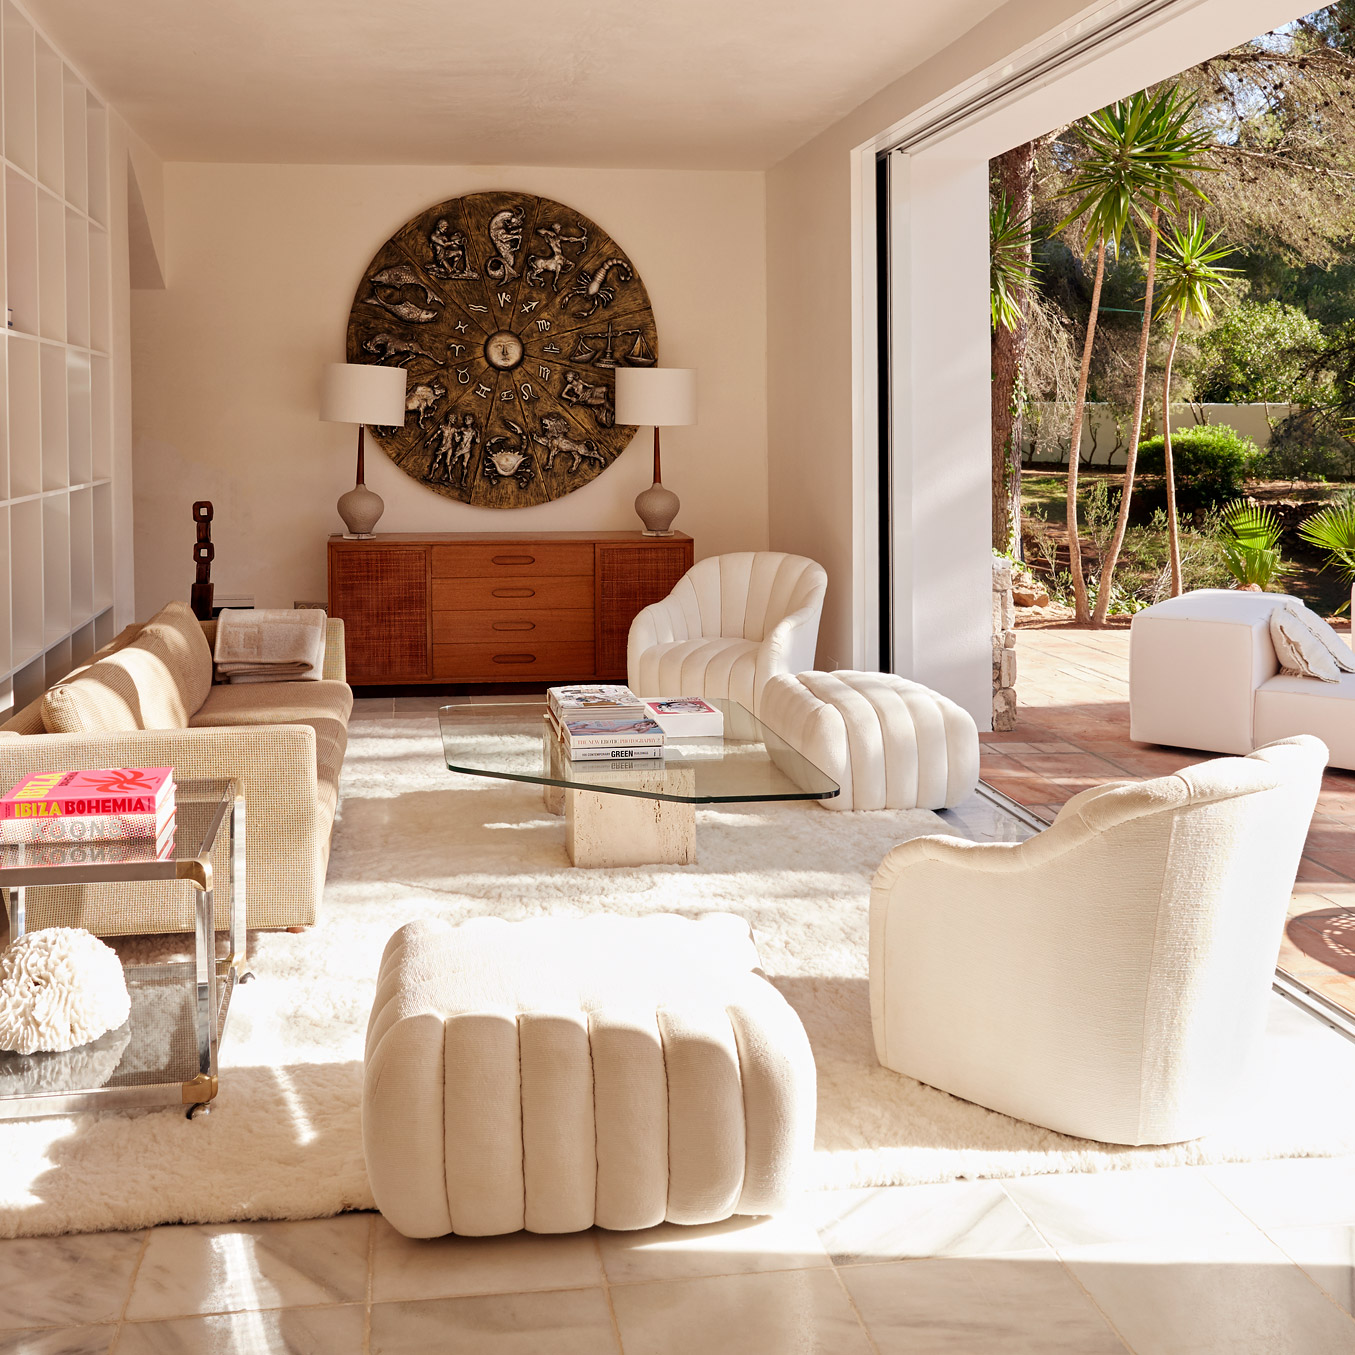 Ibiza interior designed by Caroline Legrand Design